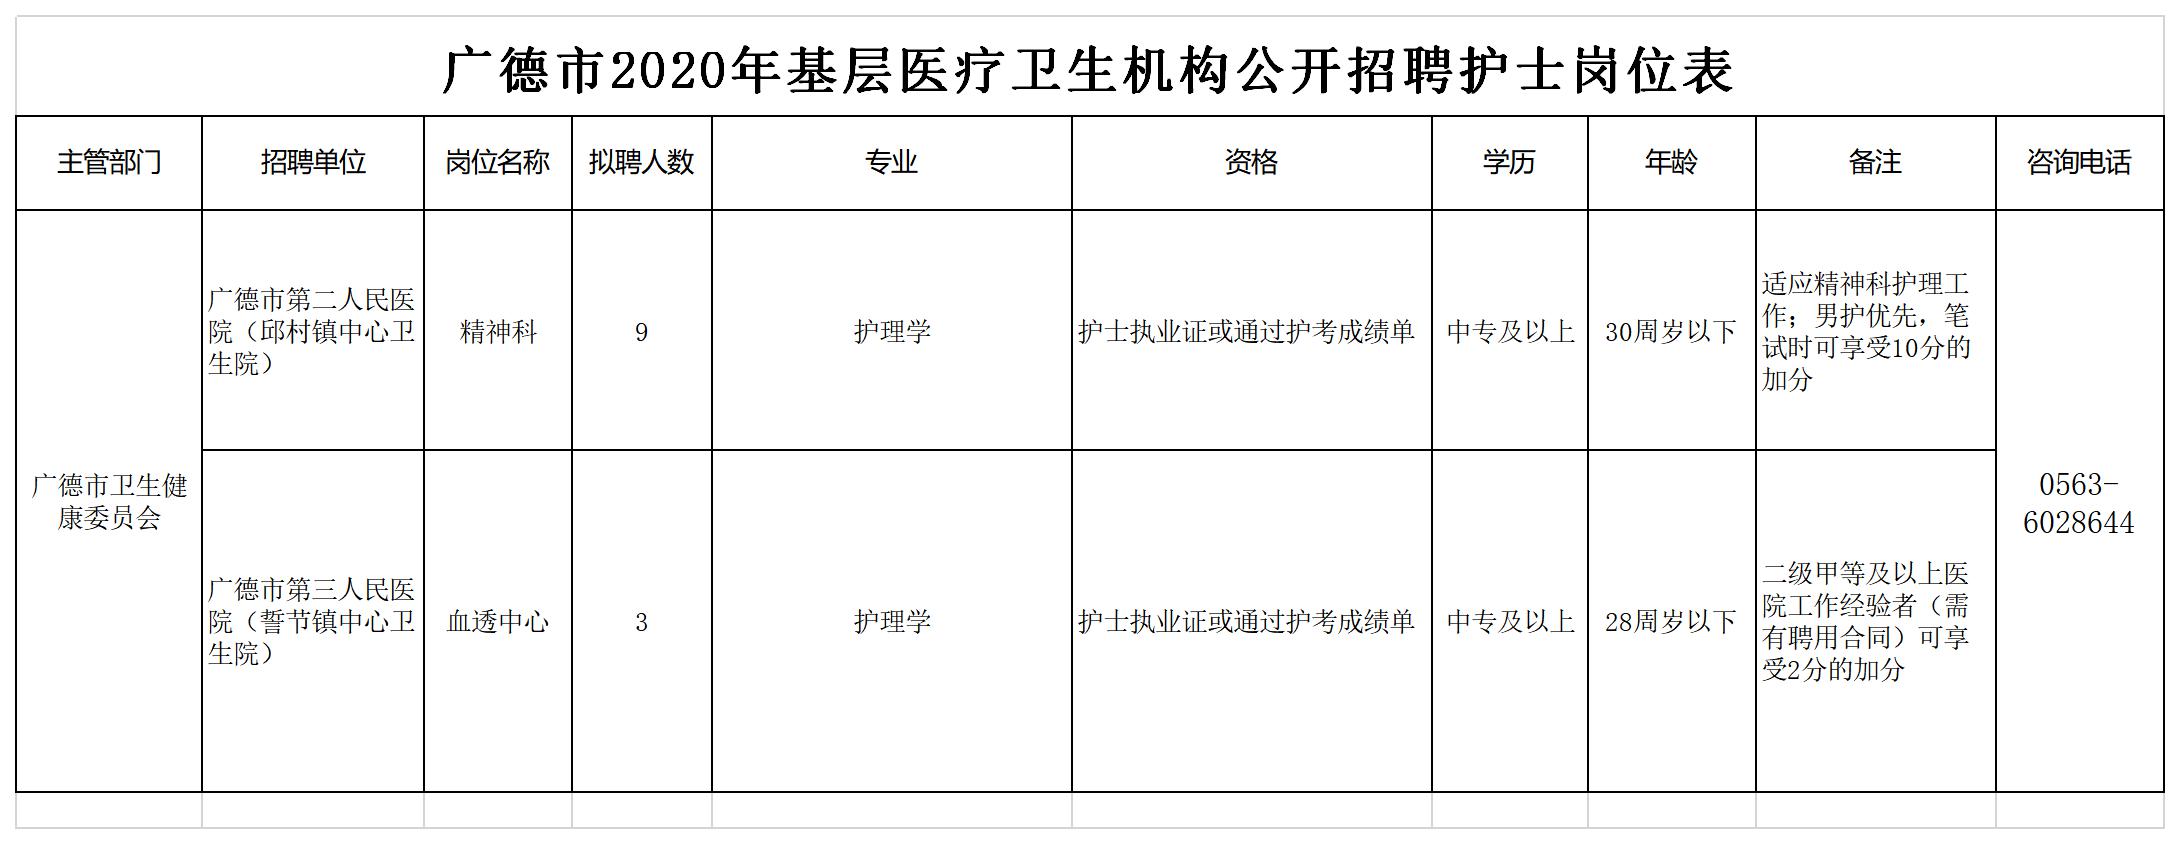 附件2：广德市2020年基层医疗卫生机构公开招聘护士岗位表.jpg